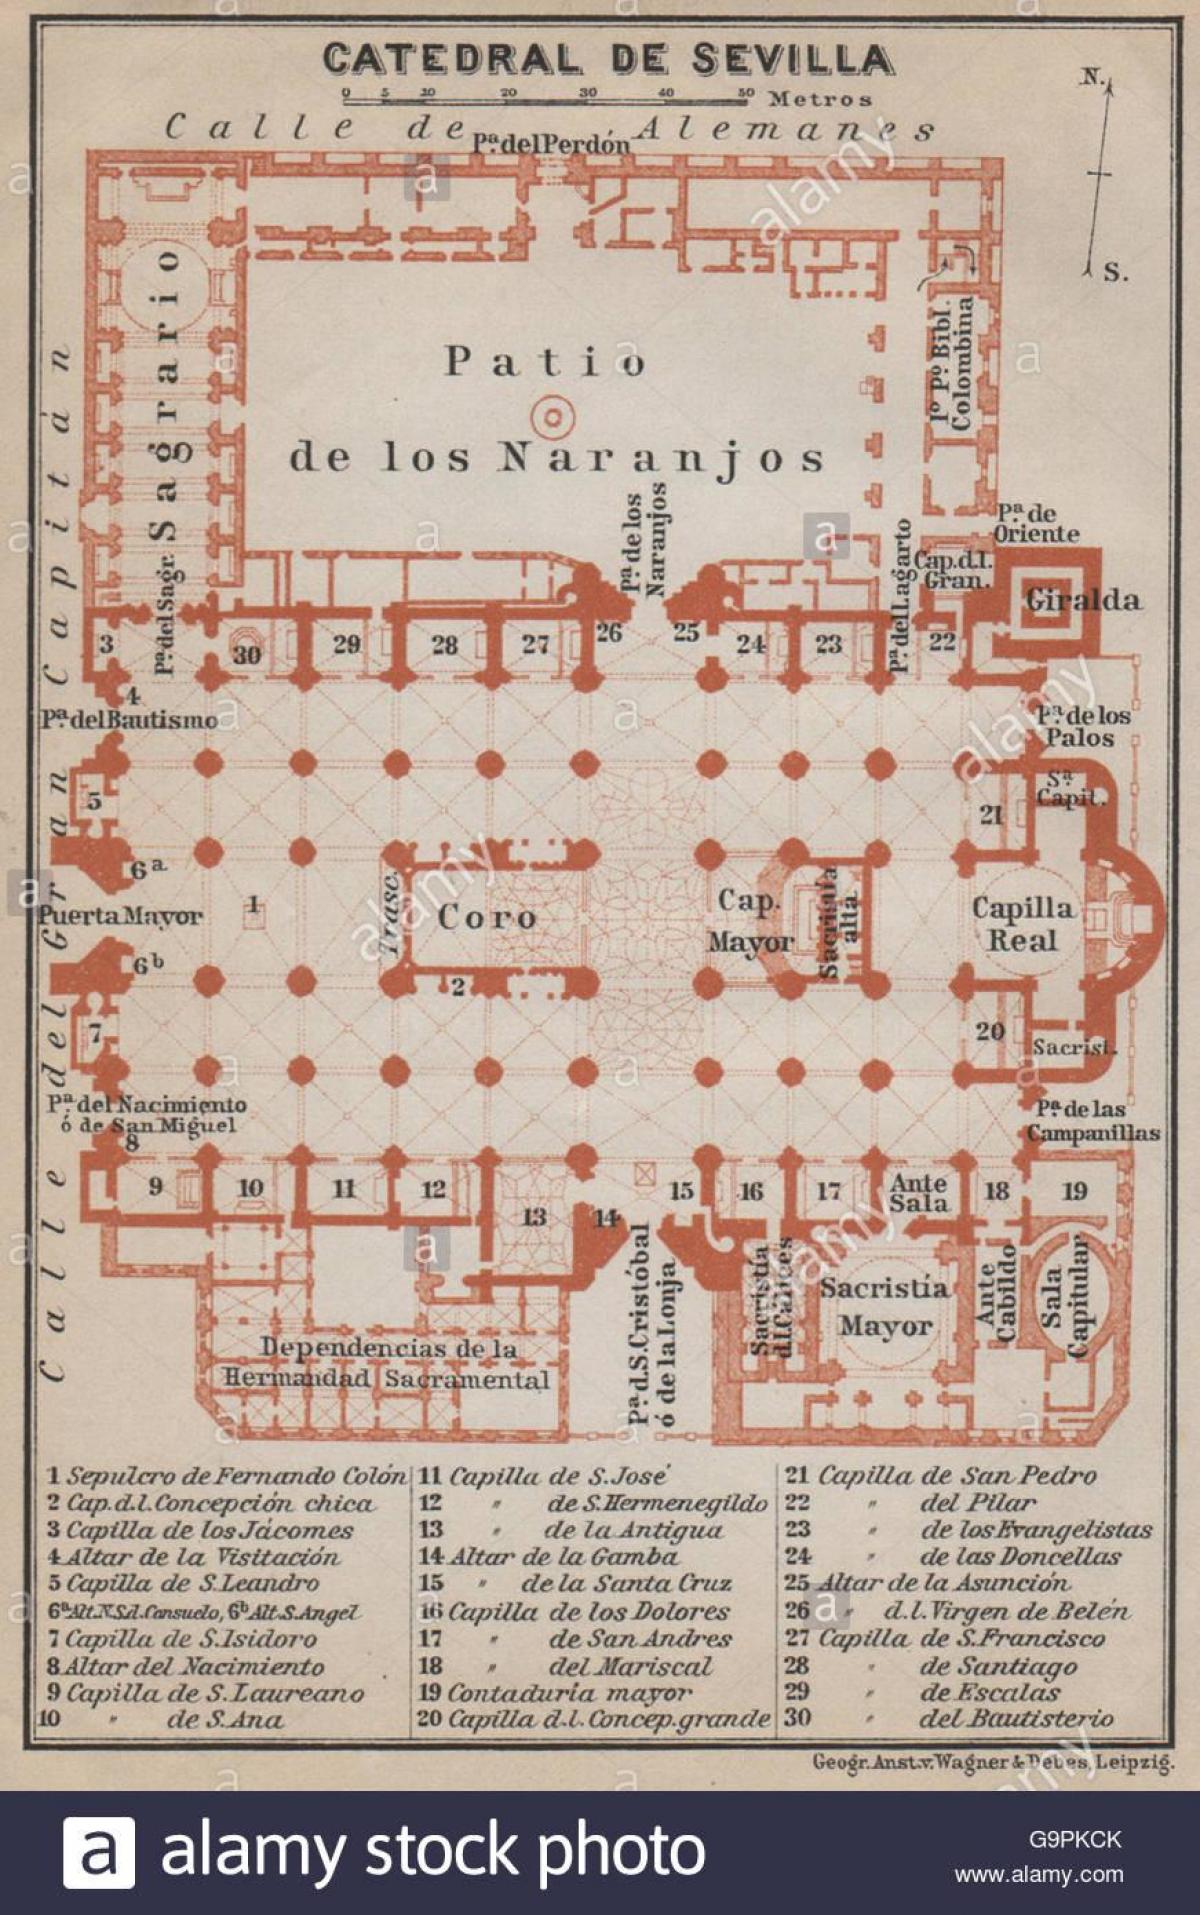 מפה של קתדרלת סביליה